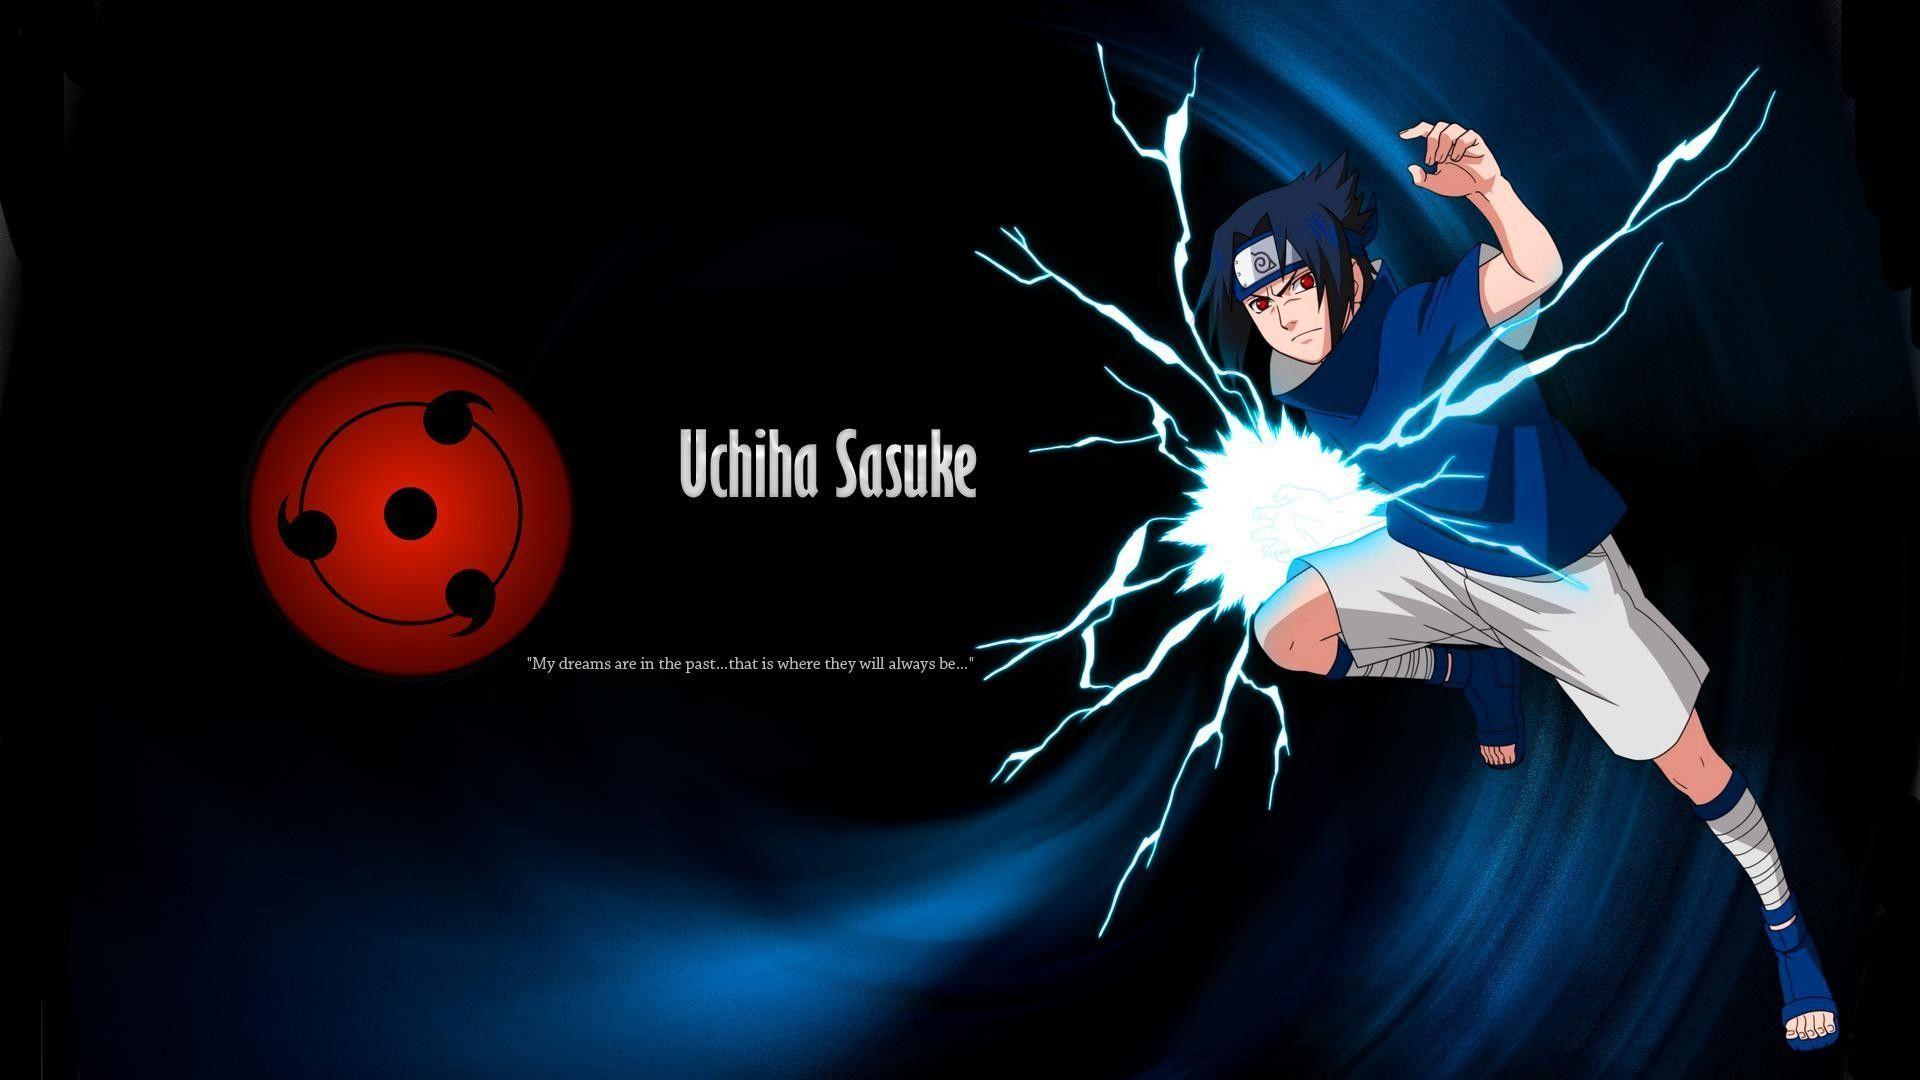 Sasuke Uchiha wallpaperDownload free awesome full HD